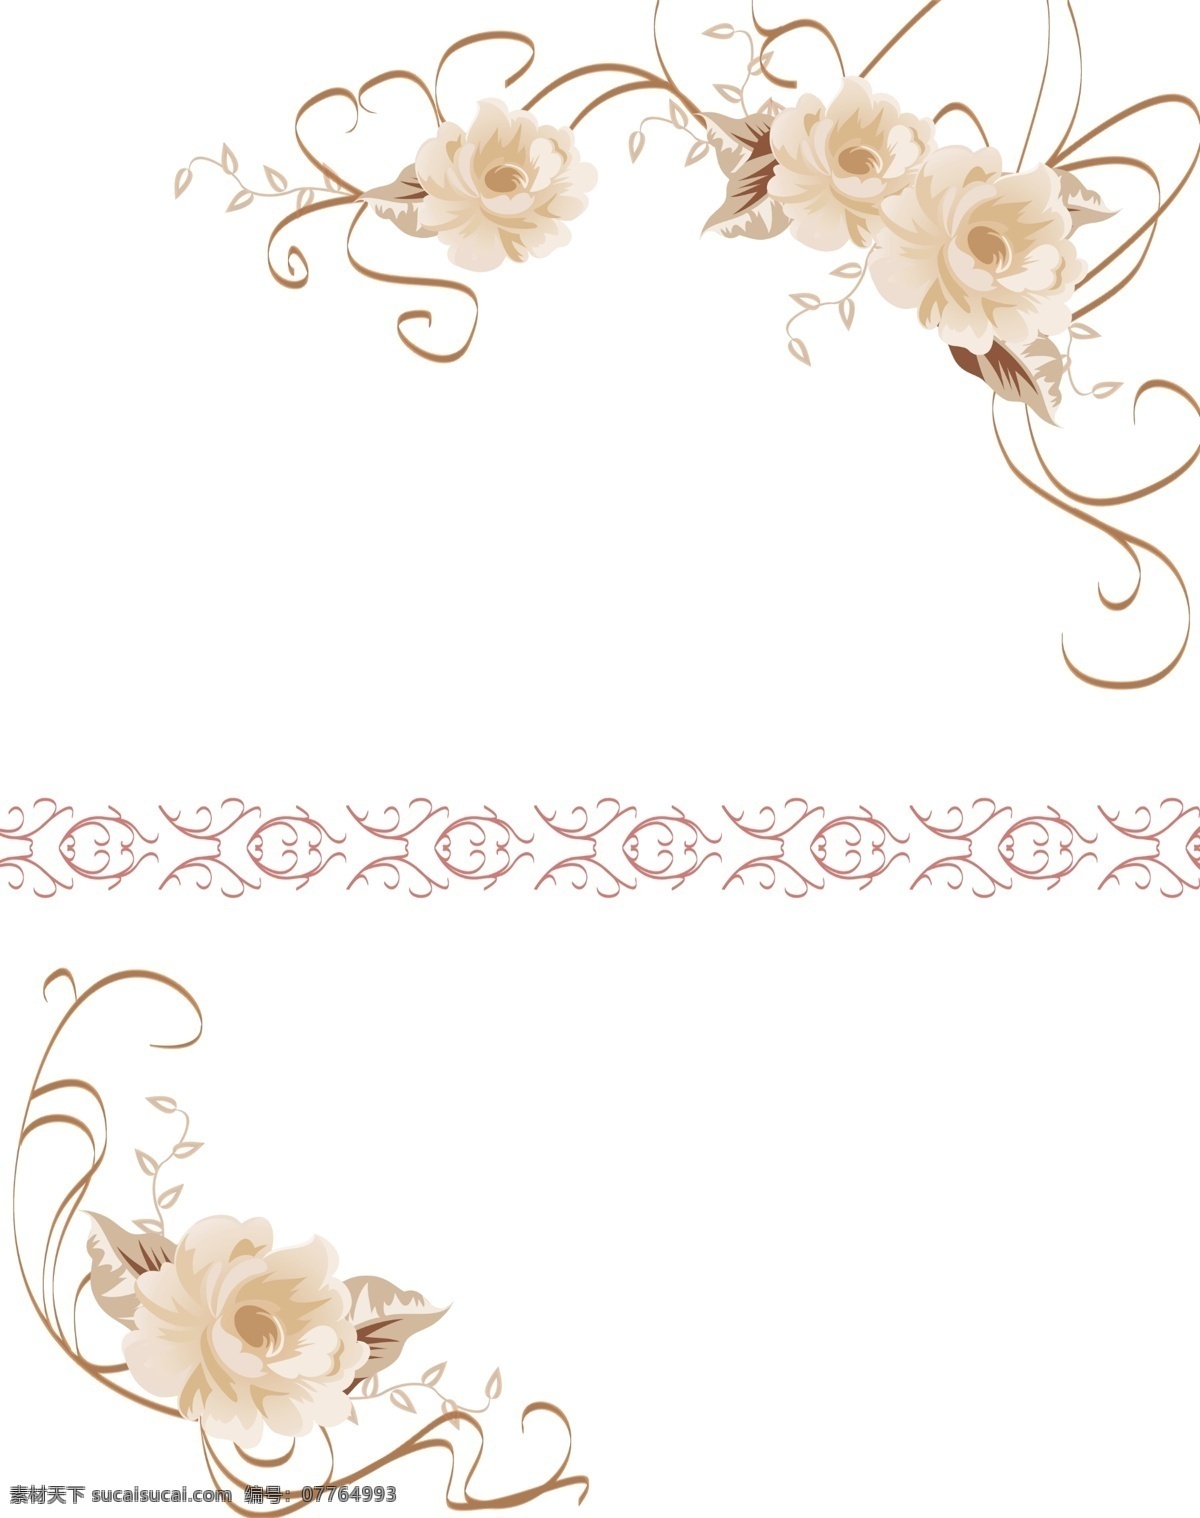 白玫瑰 粉玫瑰 广告设计模板 海棠 玫瑰 玫瑰花 牡丹 曲线 瞩目 移门 图案 模板下载 线条 腰线 移门图案 源文件 psd源文件